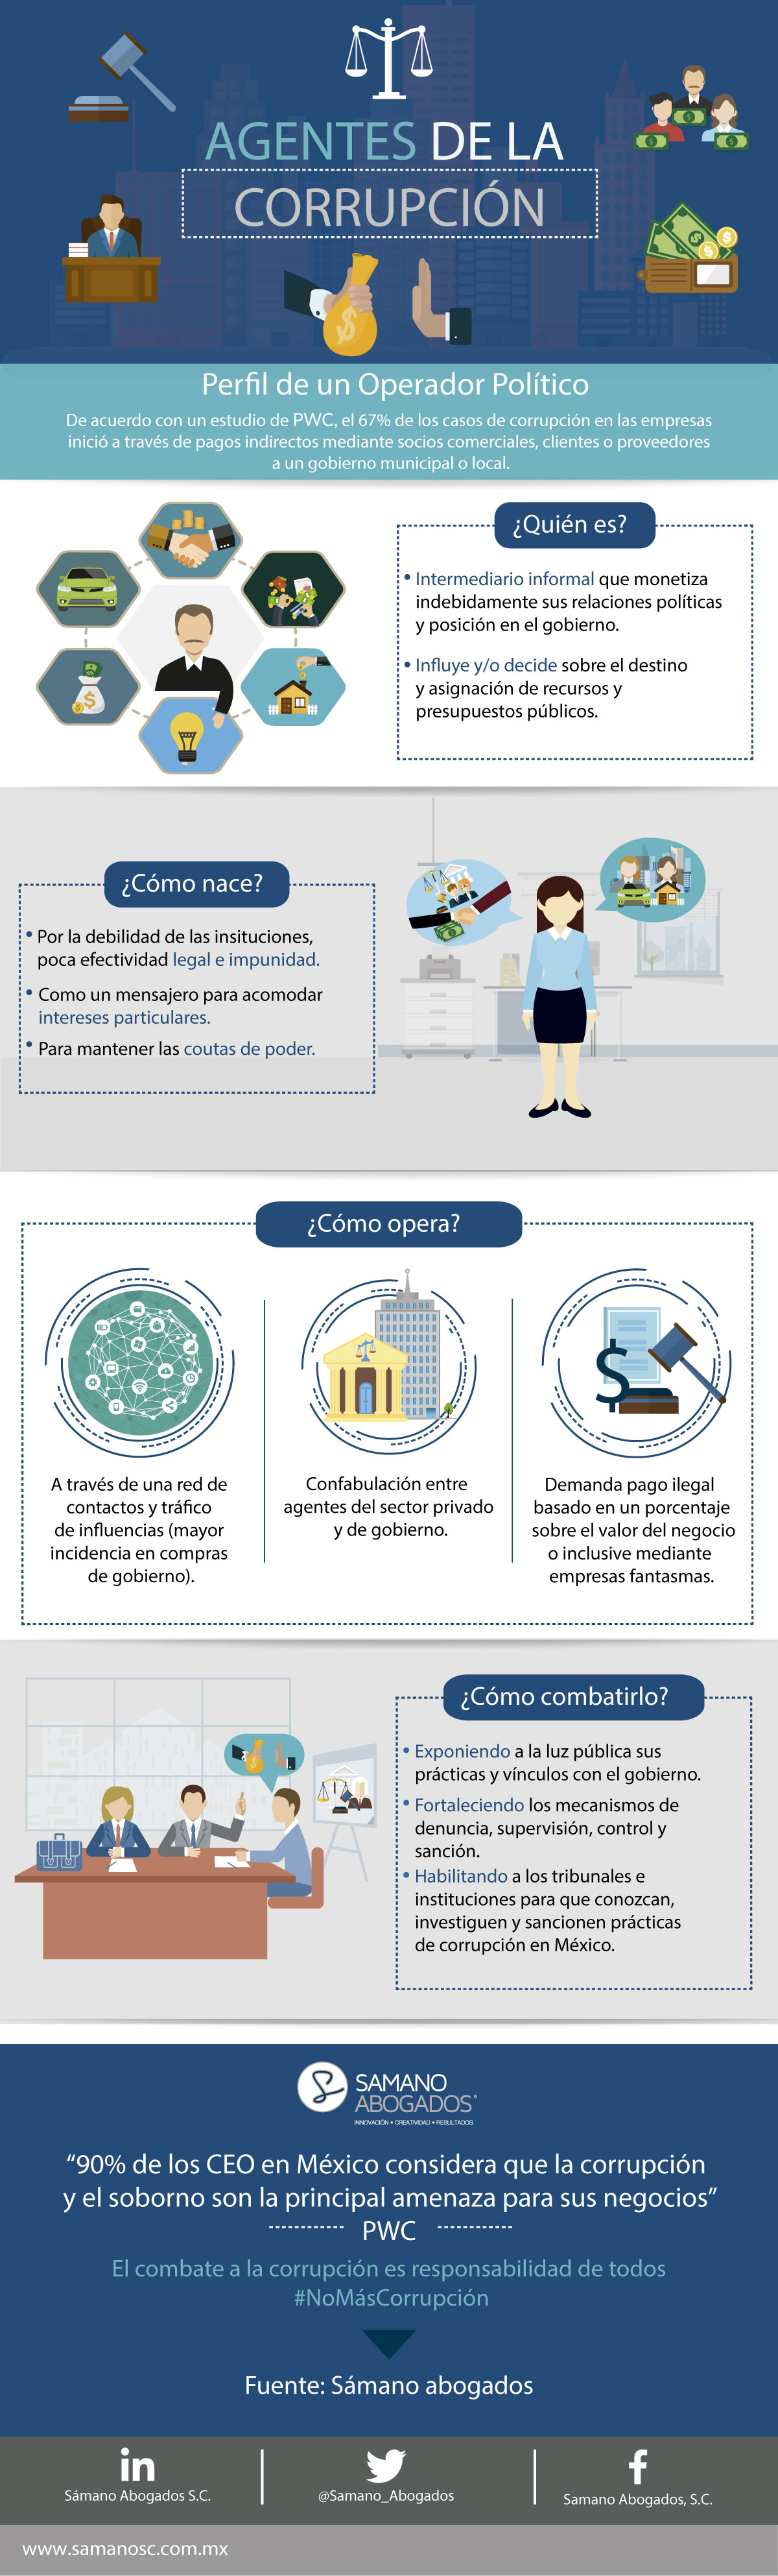 Infografía-agentes-de-la-corrupcion-VF